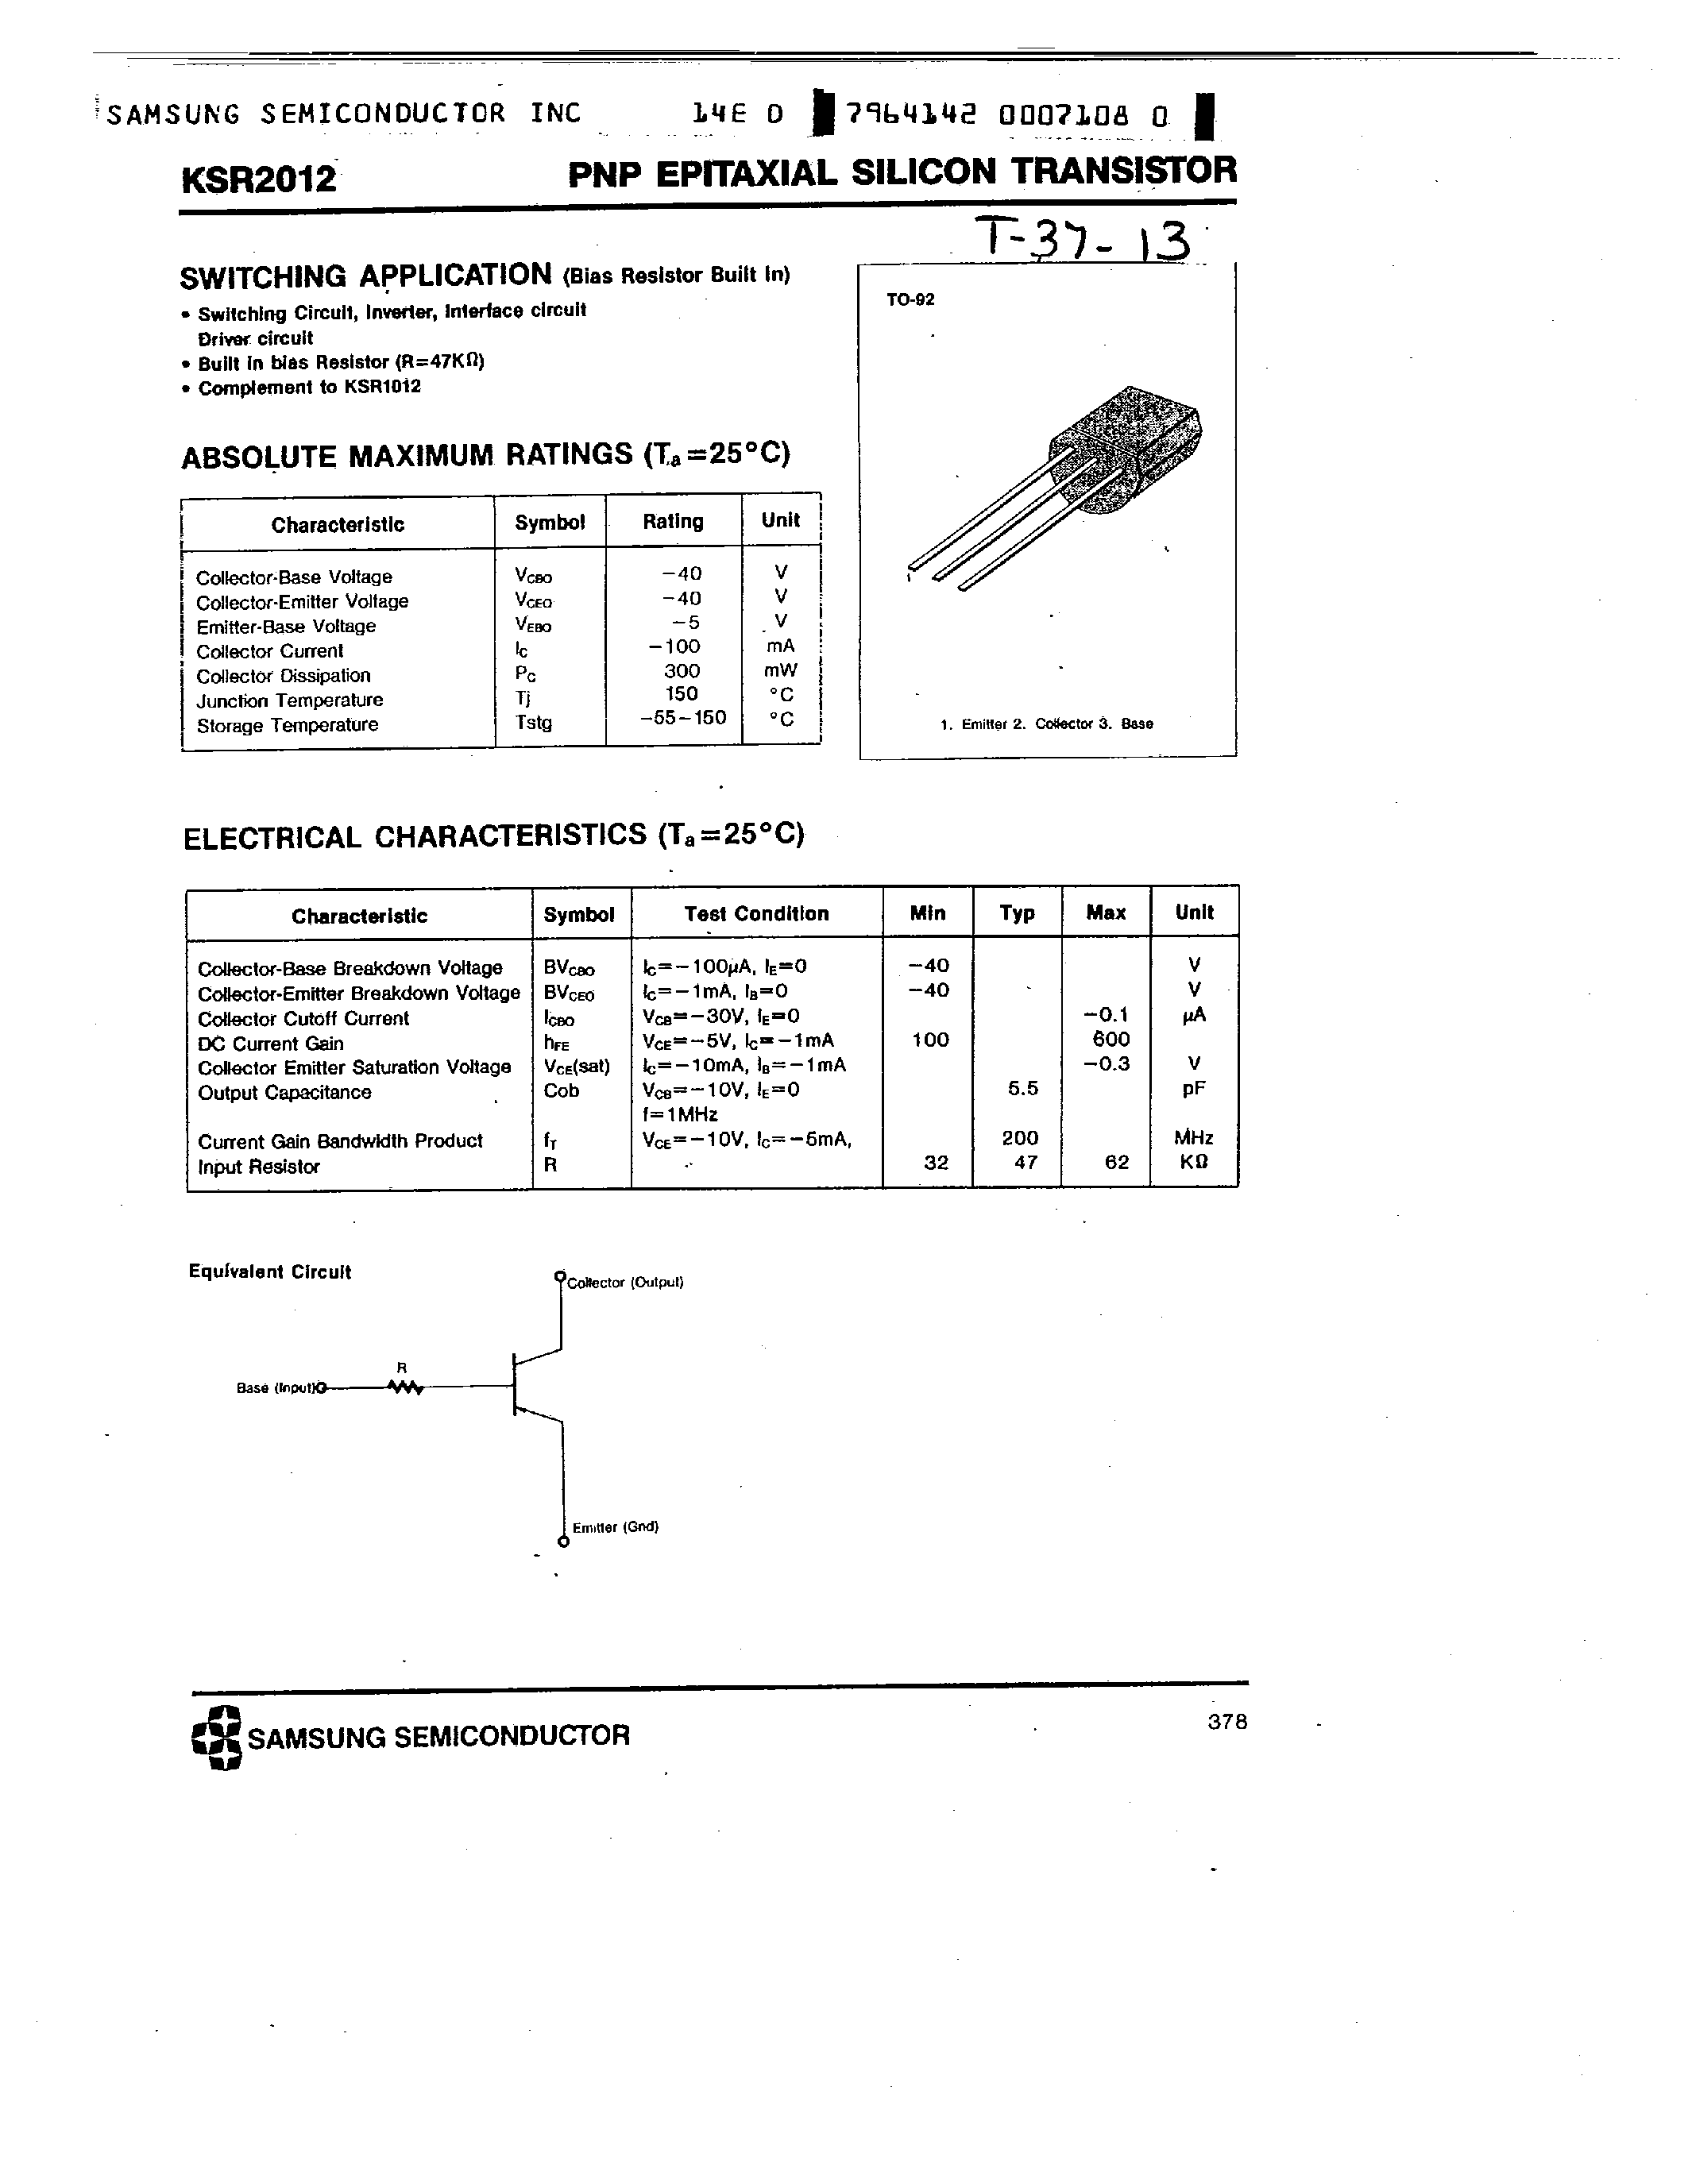 Datasheet KSR2012 - PNP (SWITCHING APPLICATION) page 1